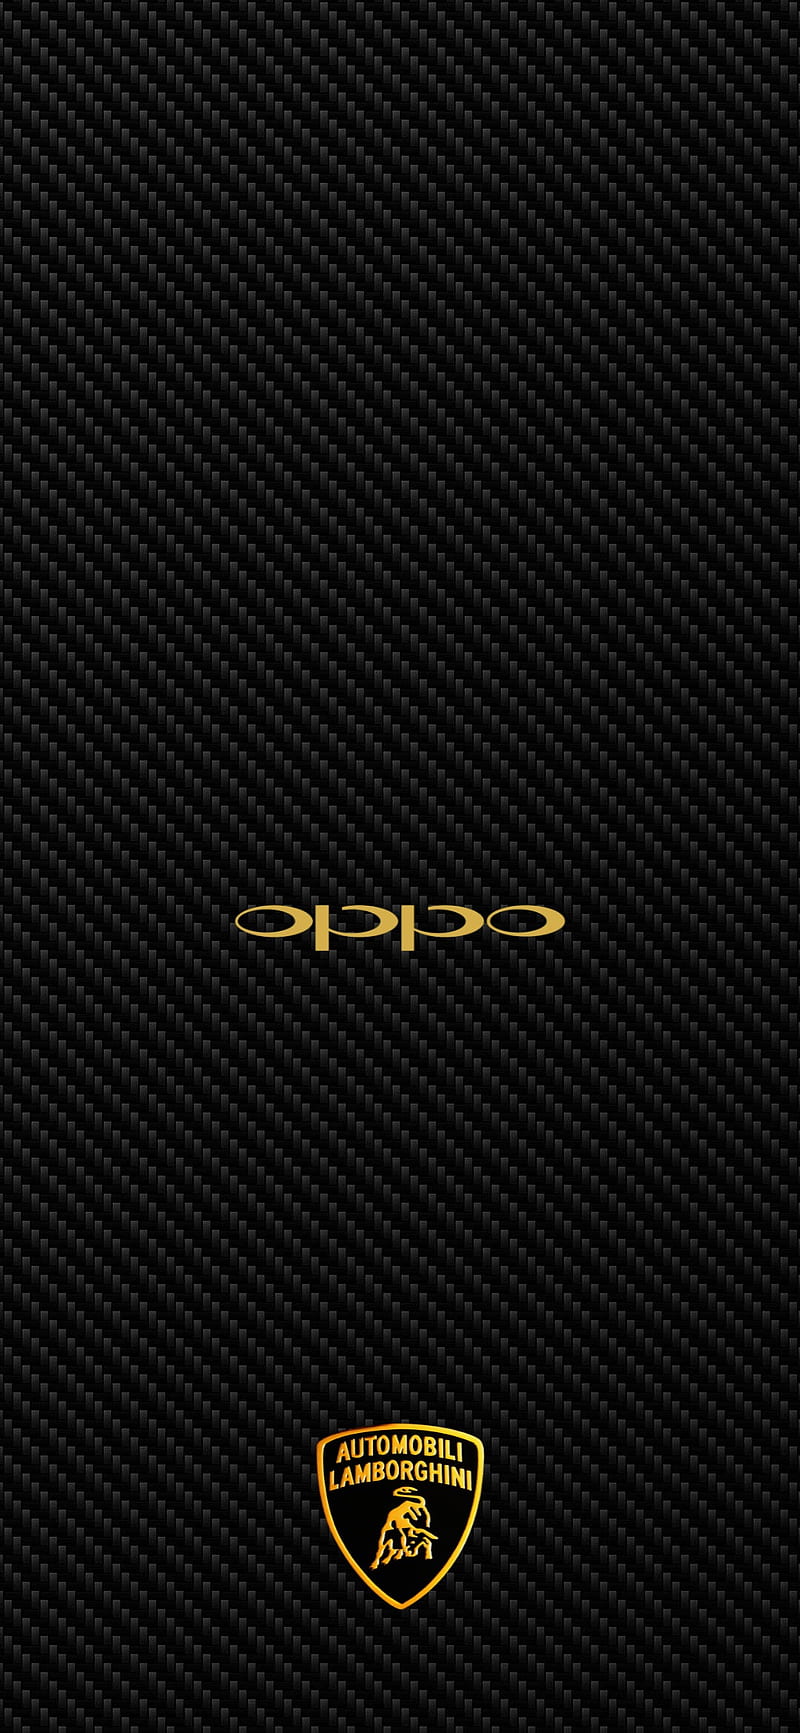 Mời bạn đến với hình nền điện thoại độc đáo trên Oppo A53, mang đến cho bạn trải nghiệm tuyệt vời mỗi khi sử dụng điện thoại. Hình ảnh sống động, sắc nét sẽ làm bạn vô cùng thích thú.